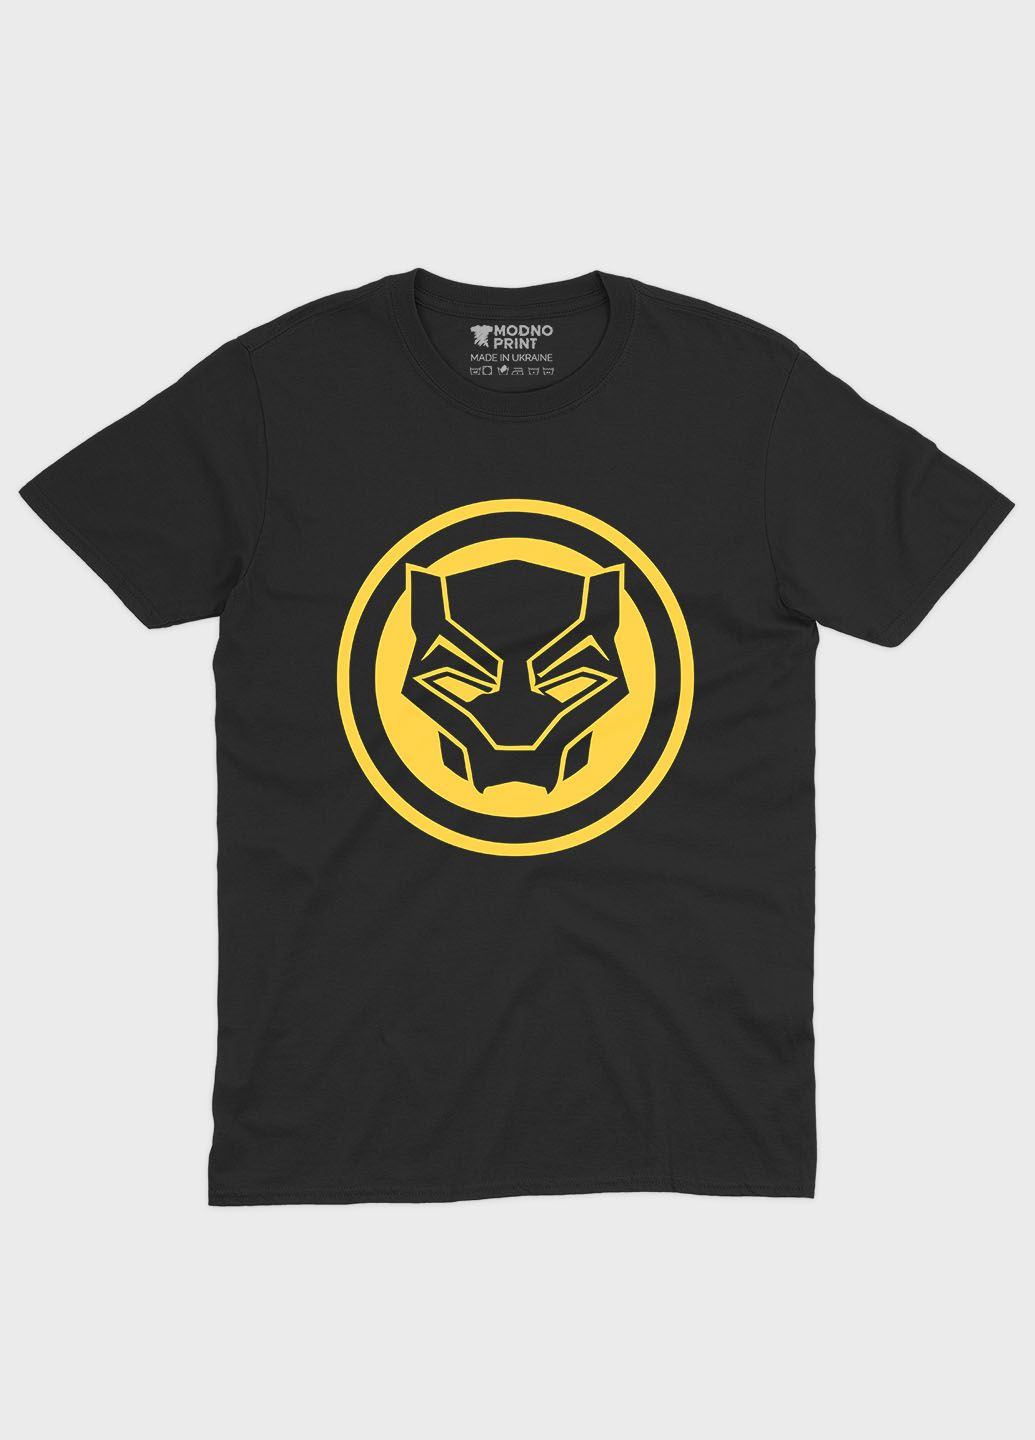 Чорна демісезонна футболка для хлопчика з принтом супергероя - чорна пантера (ts001-1-bl-006-027-004-b) Modno